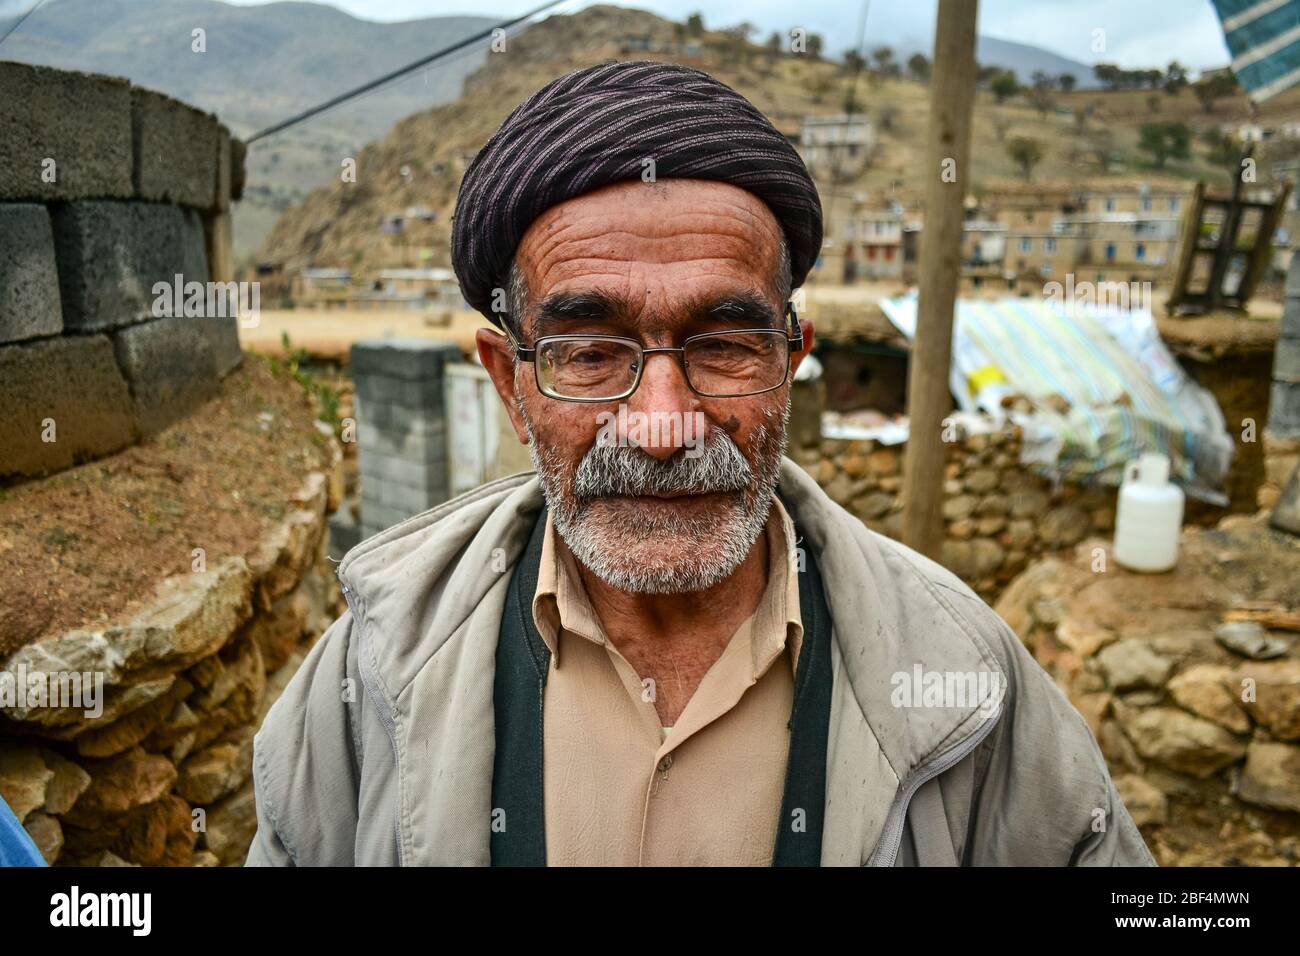 Palangan, iranisches Kurdistan - 15. November 2013: Porträt eines alten kurdischen Mannes mit Gesicht voller Falten, Brille und weißem Bart Stockfoto